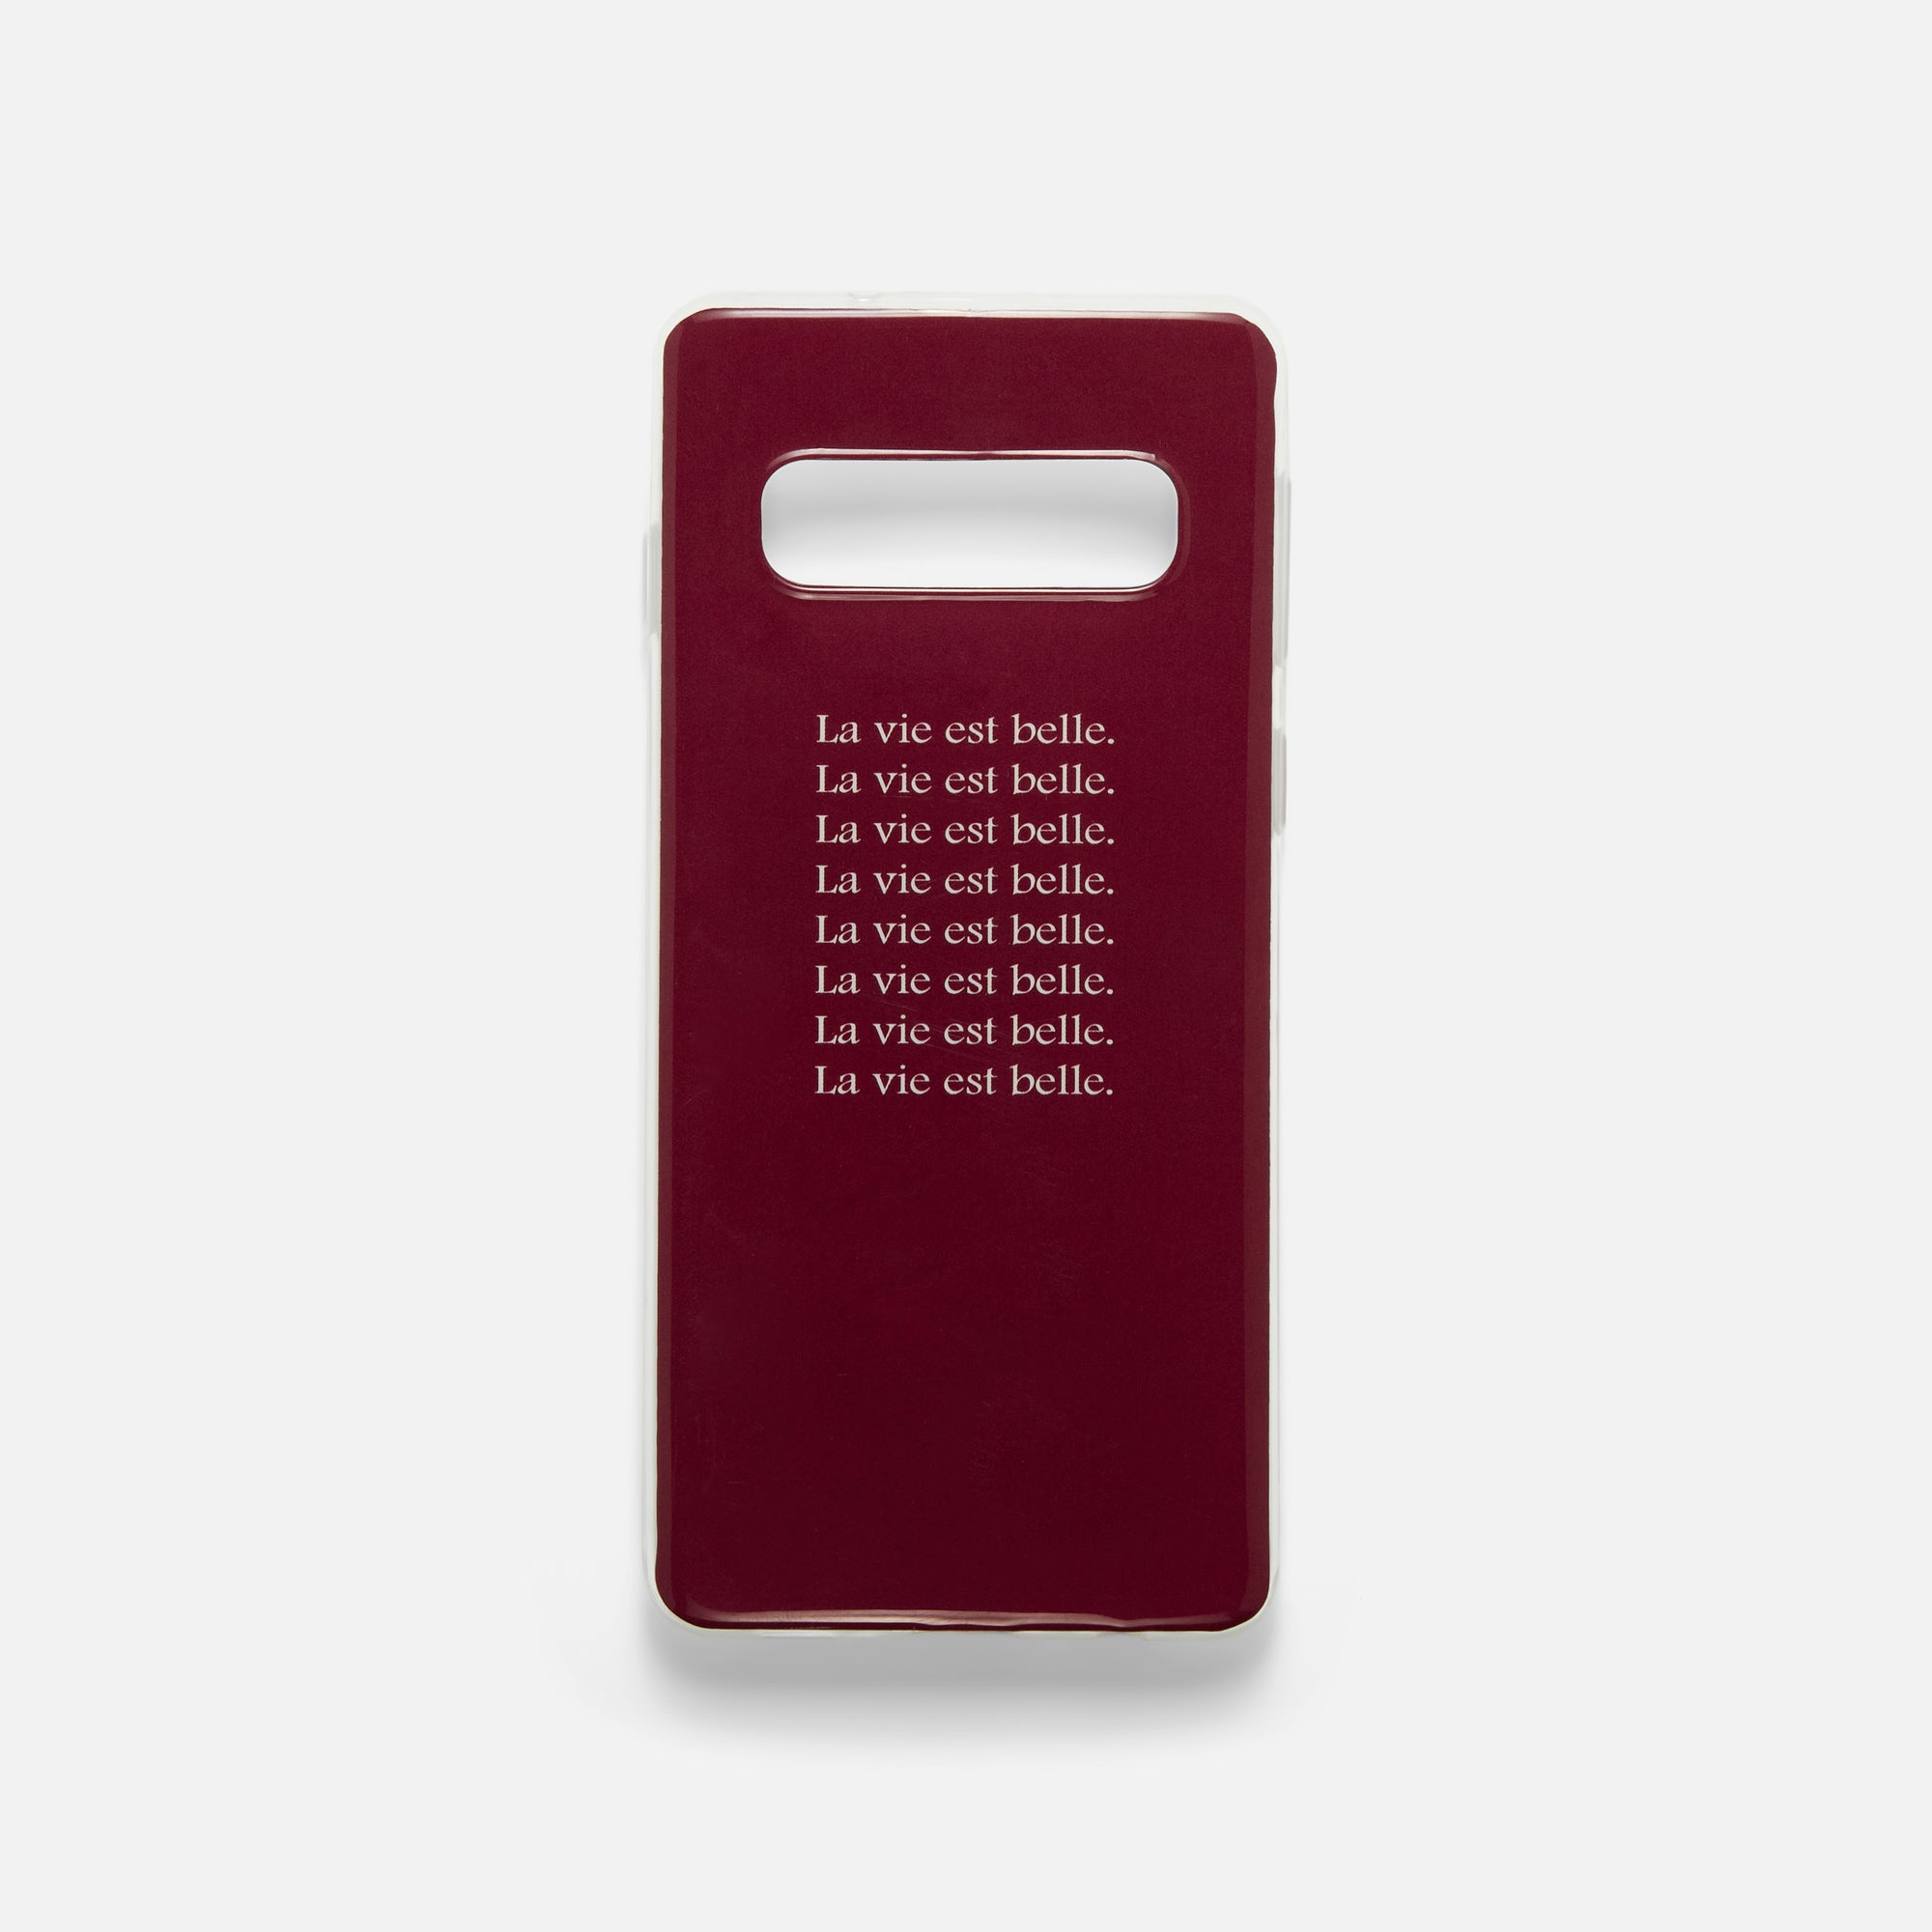 Burgundy phone case for Samsung S10 with "la vie est belle" inscriptions